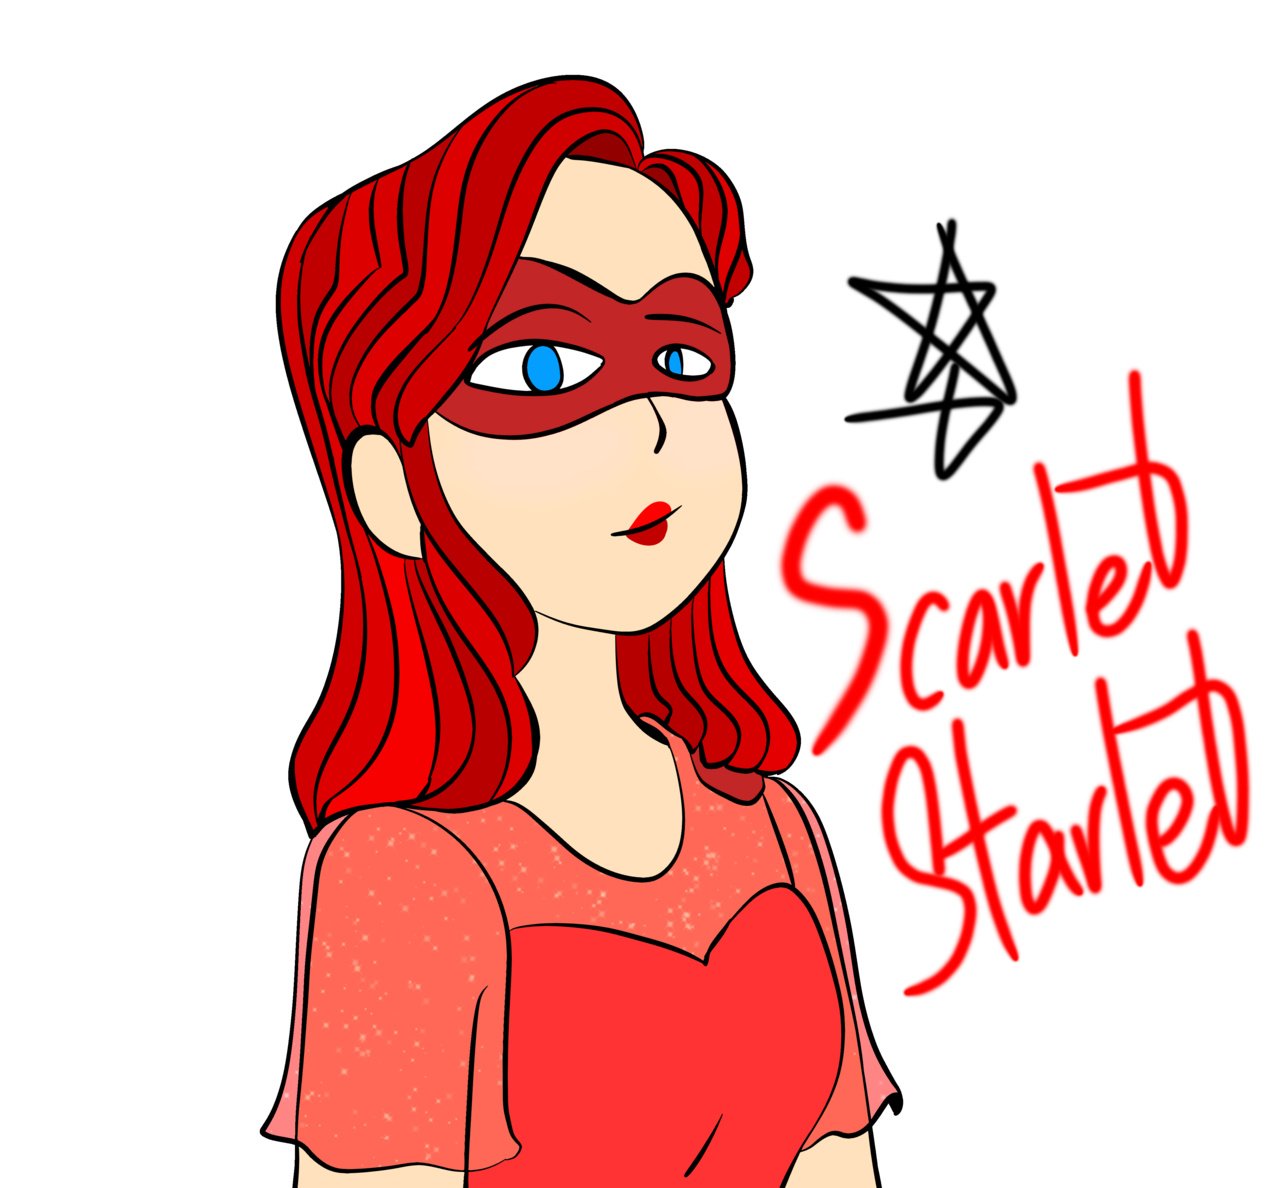 scarlet starlet